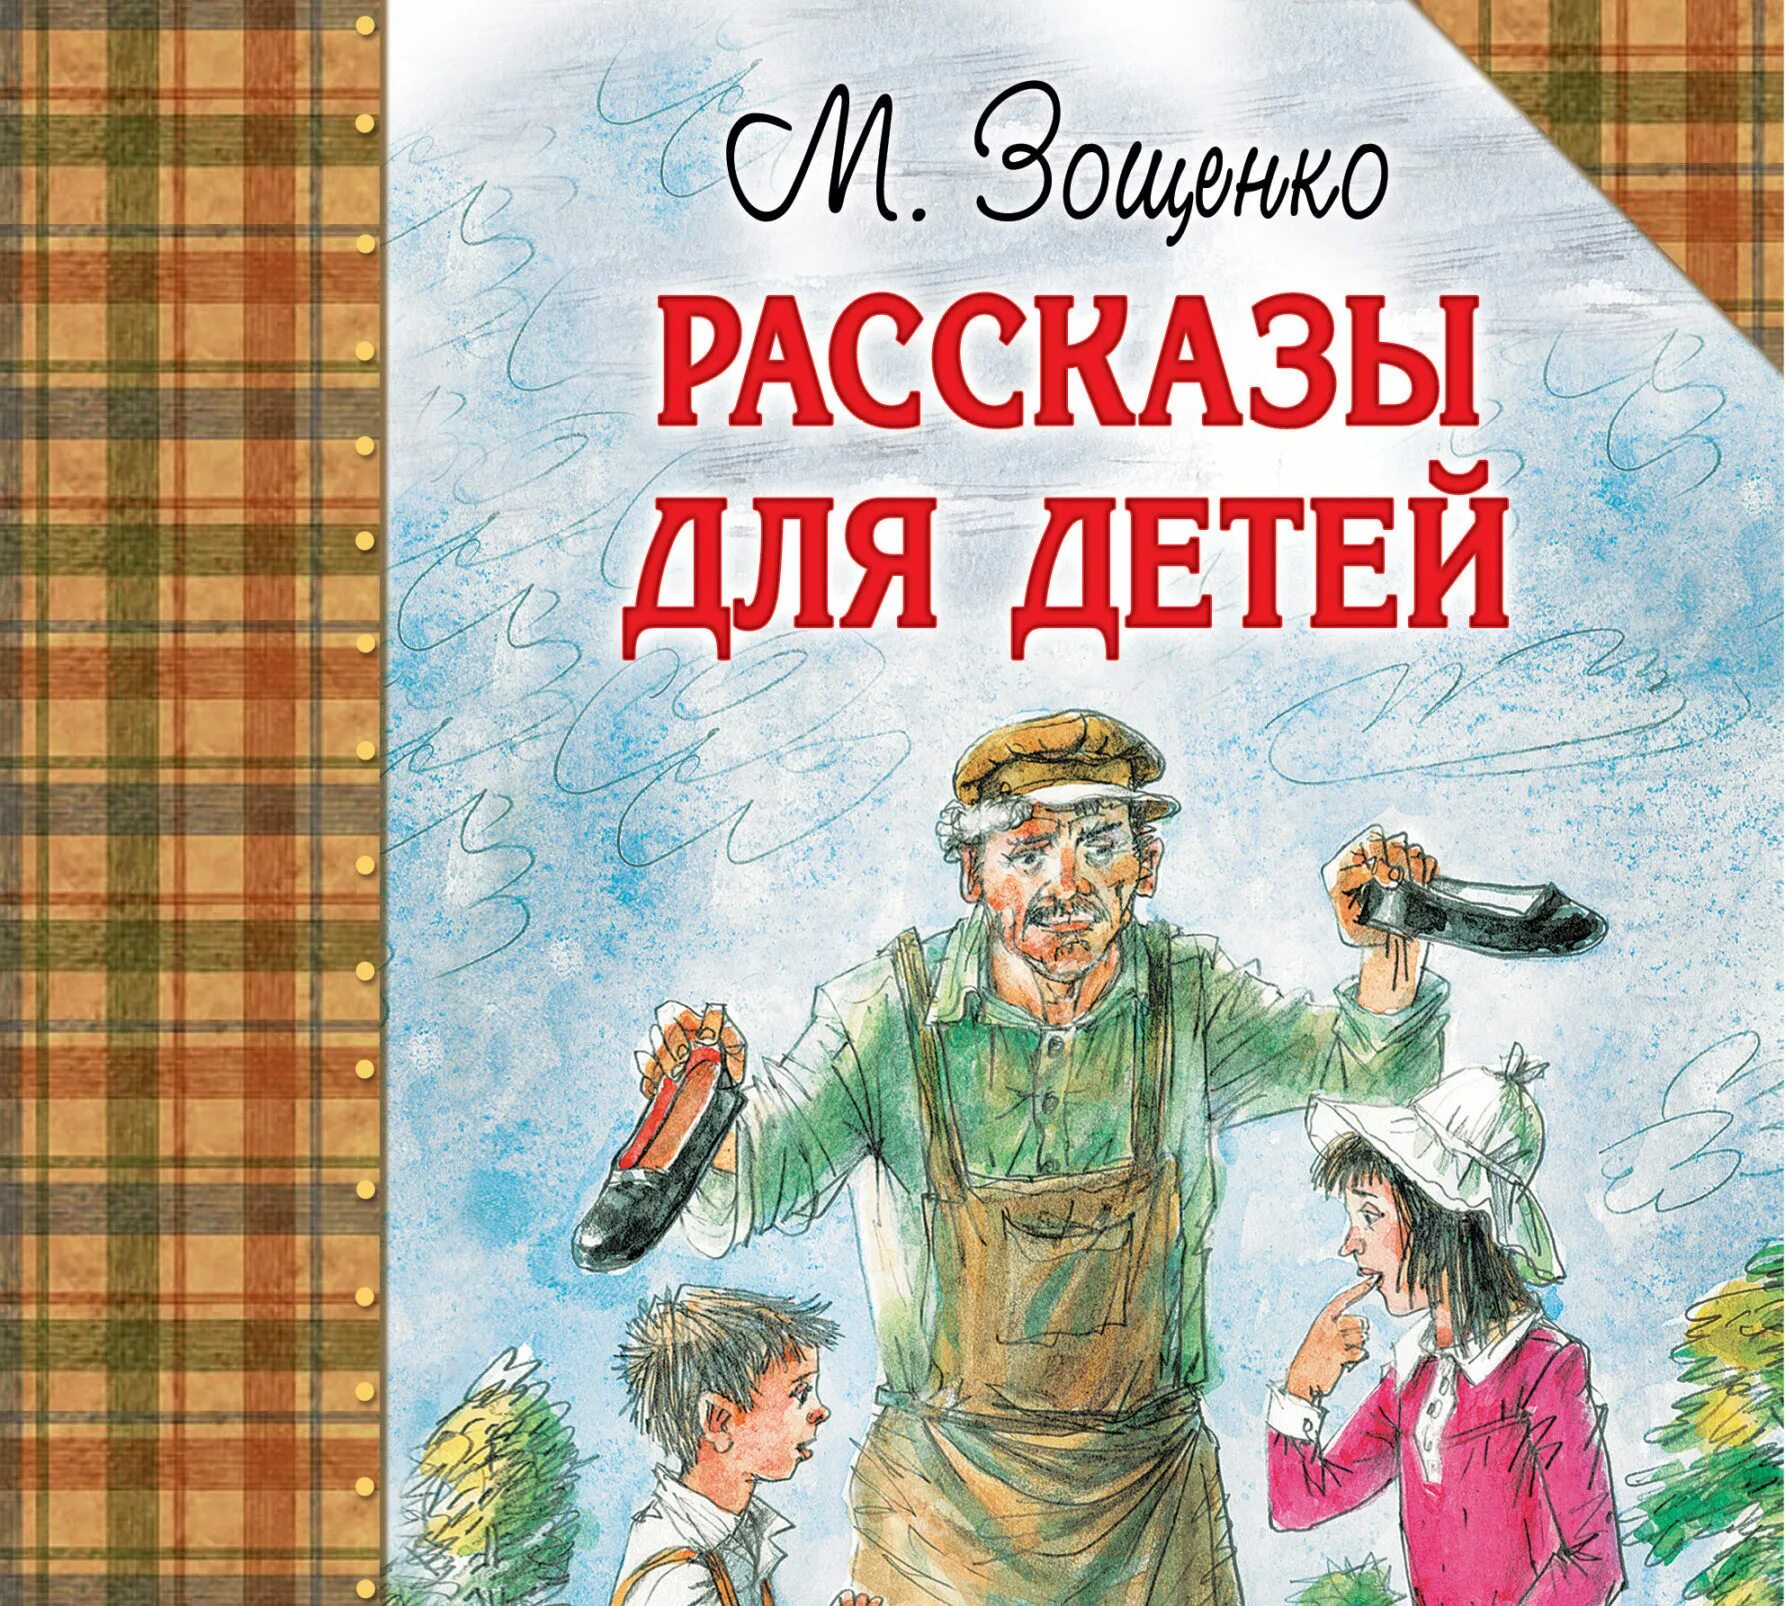 Зощенко м. рассказы для детей.